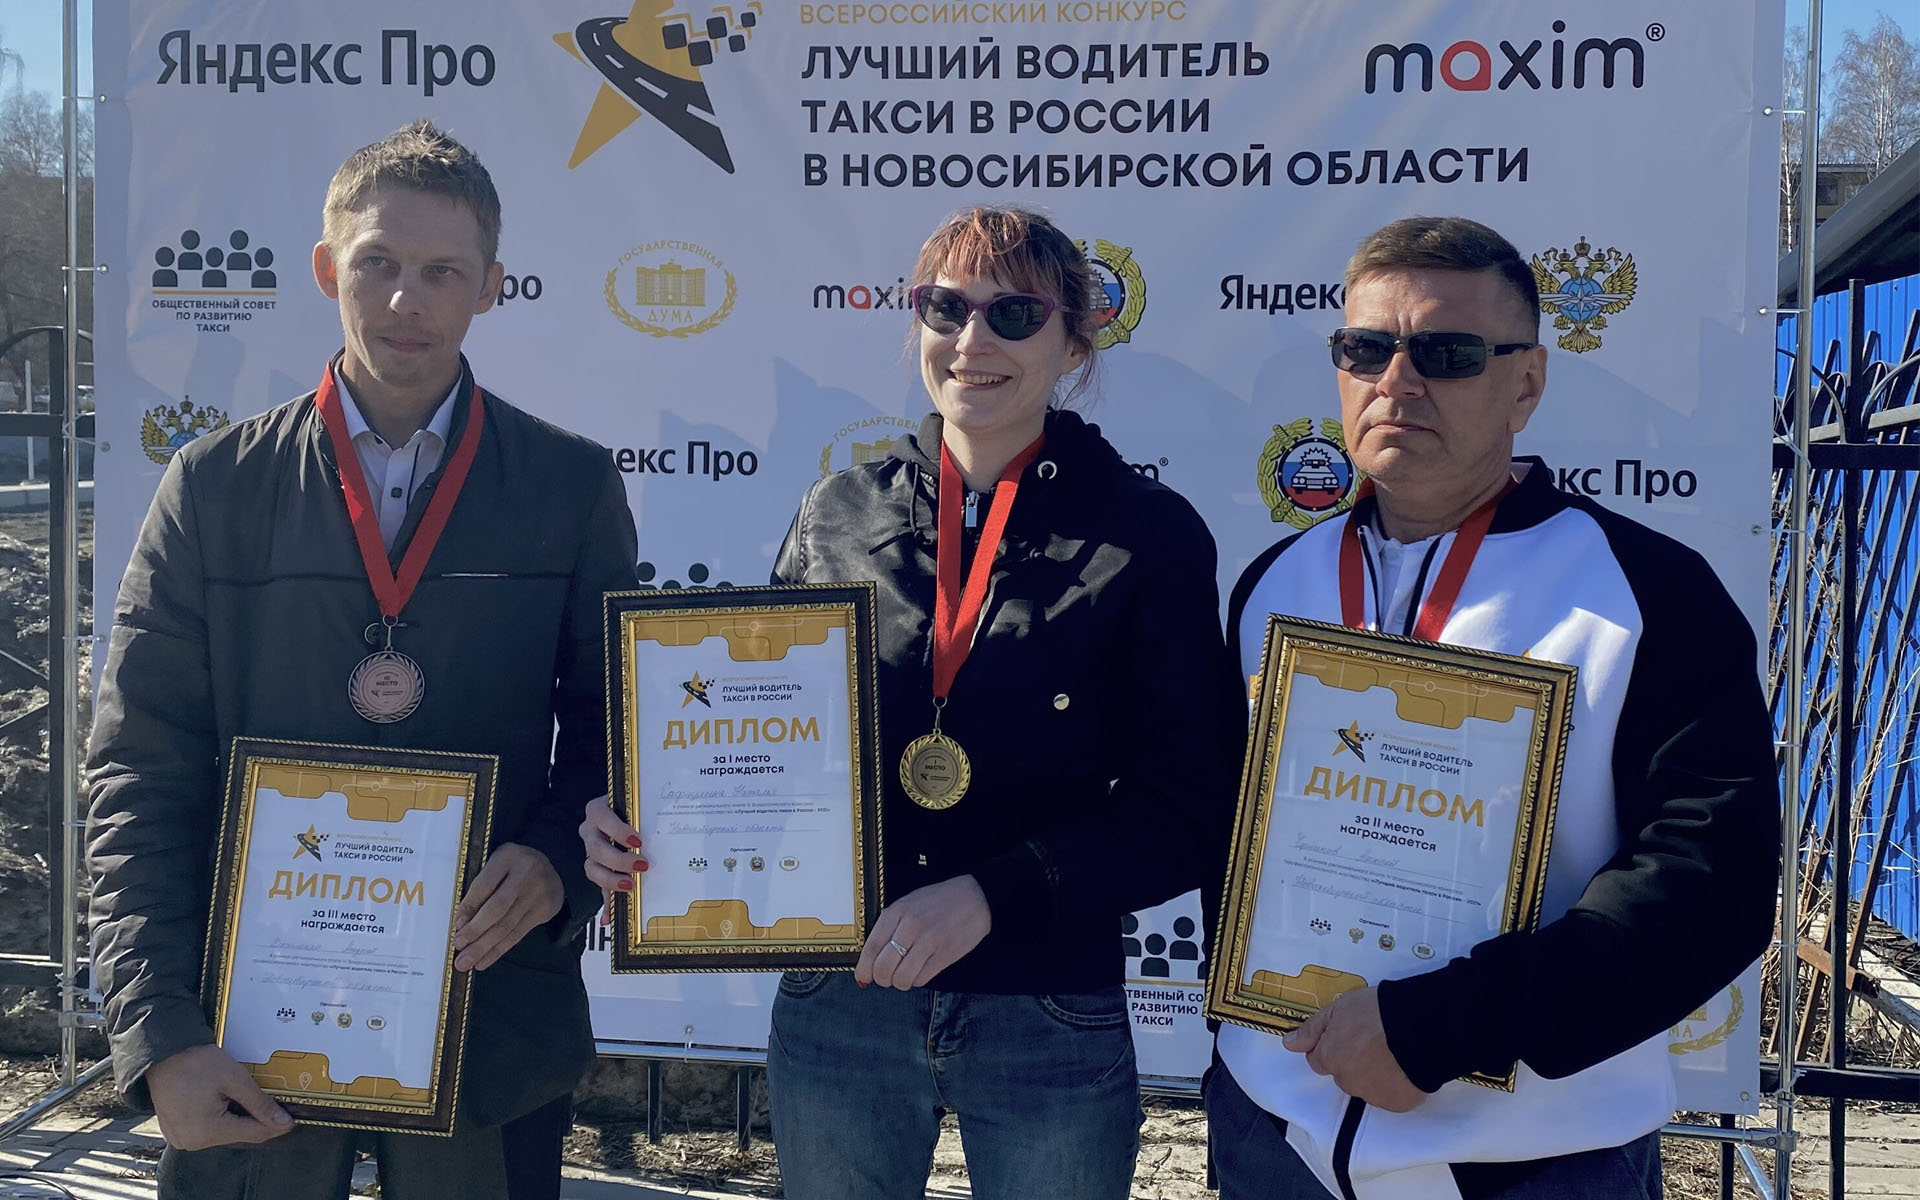 В Новосибирске лучшим водителем такси стала Наталья Сафиулина